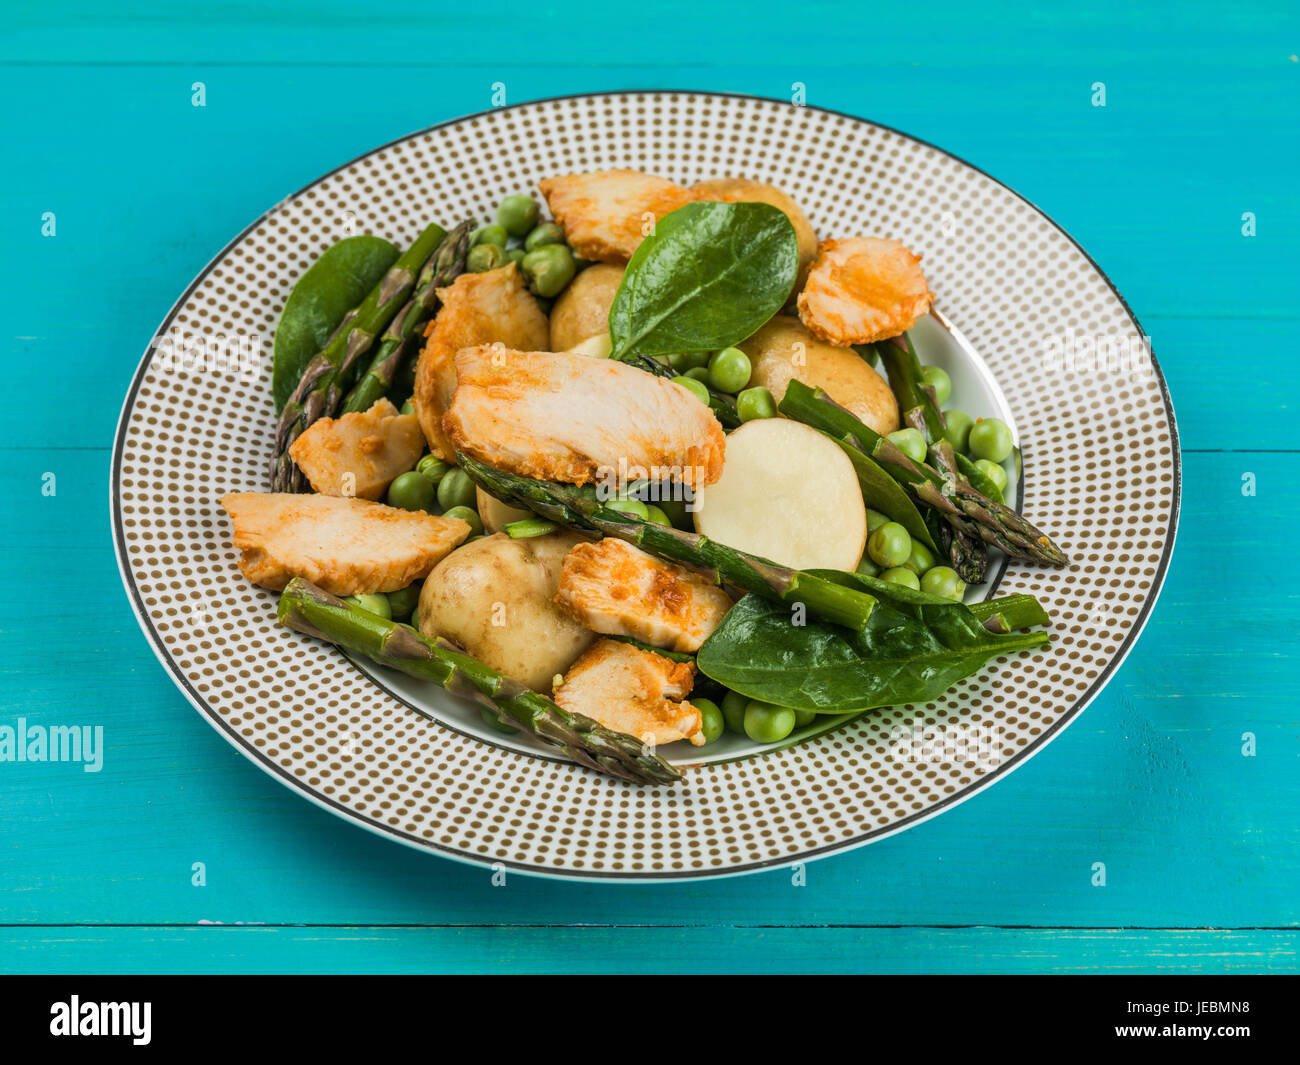 Insalata di pollo con asparagi piselli spinaci e patate bollite contro uno sfondo blu Foto Stock